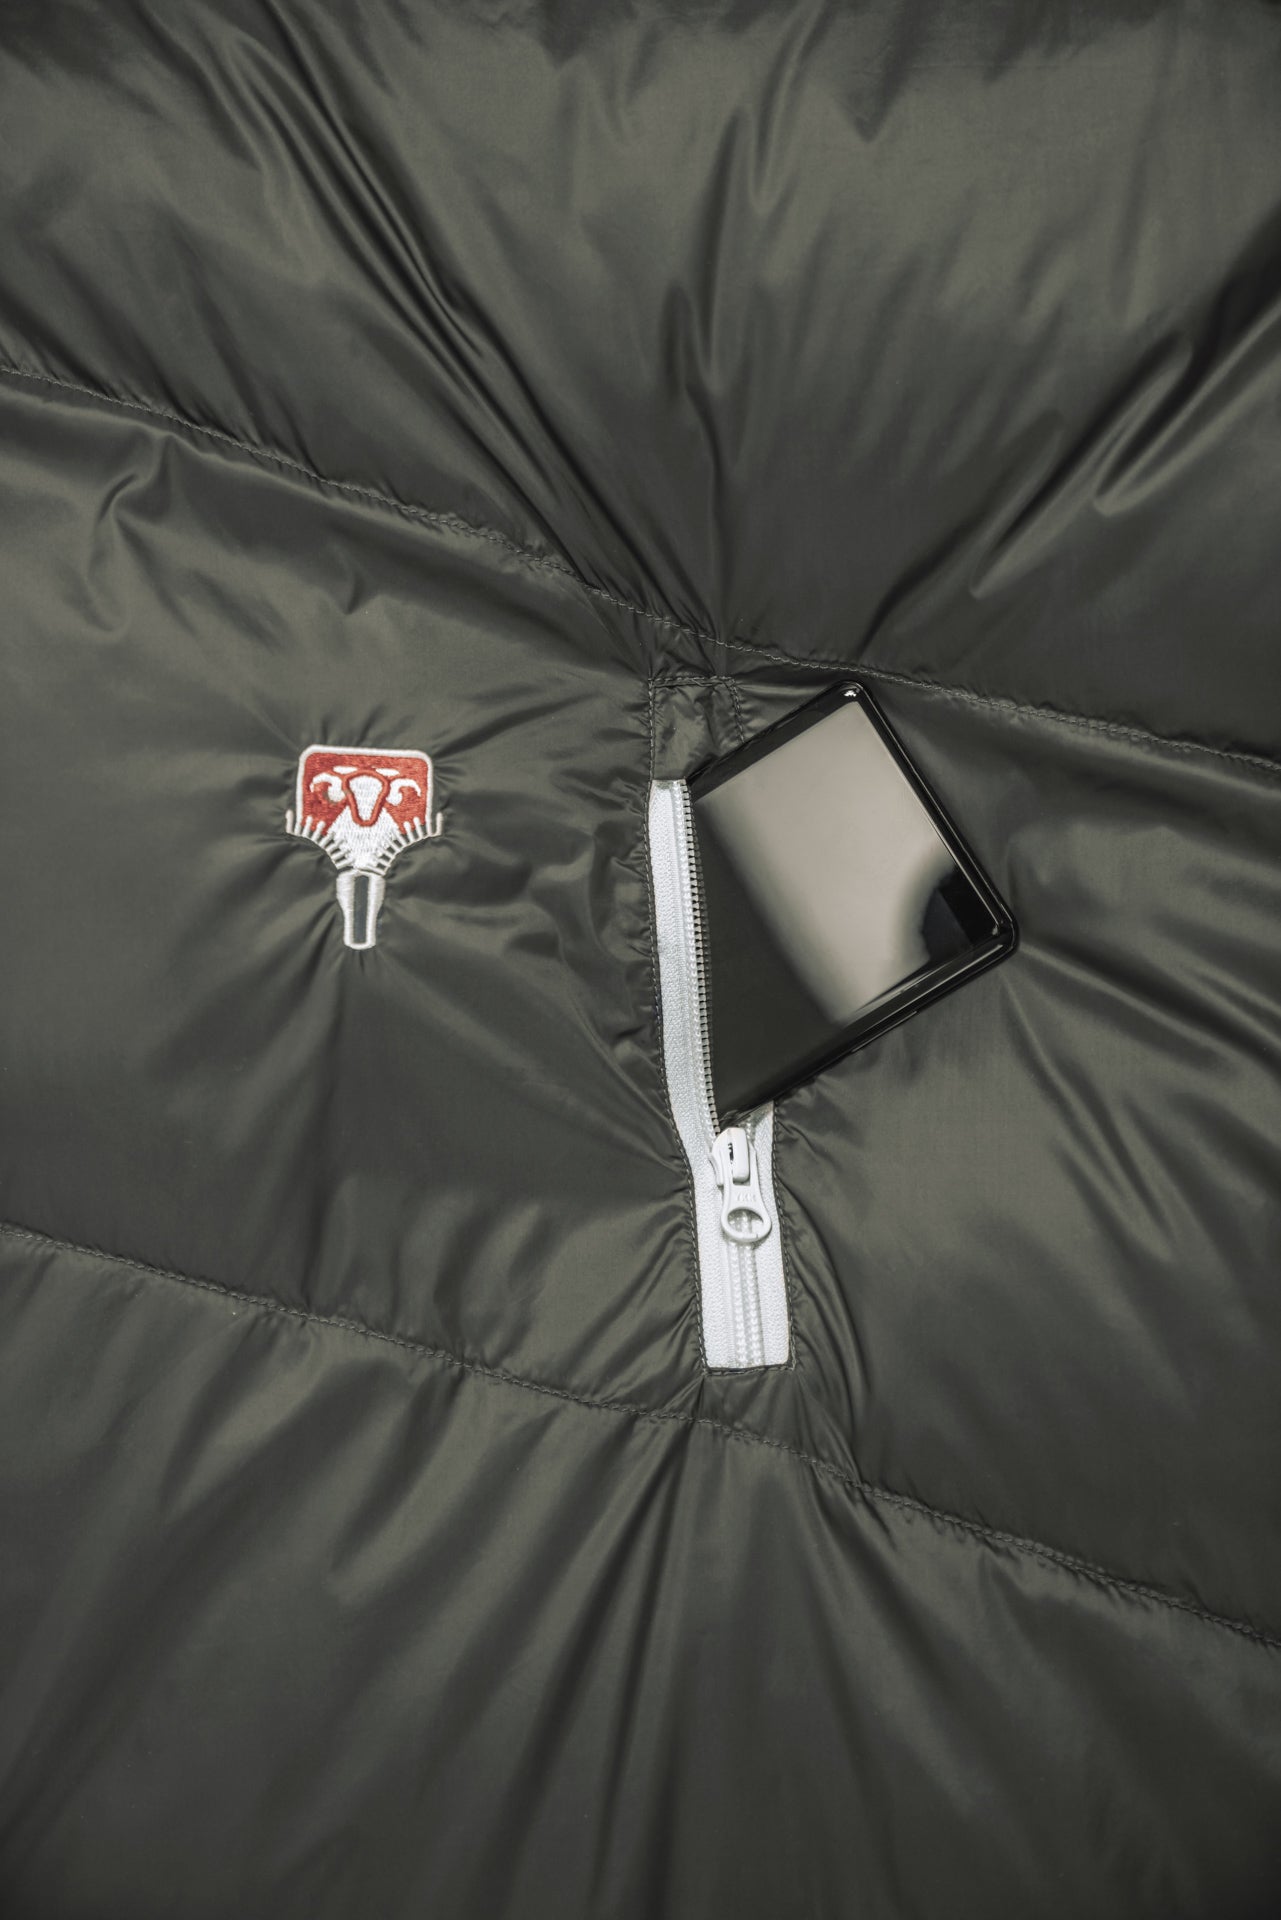 Grüezi bag Komfortschlafsack Biopod DownWool Summer Comfort - Außentasche